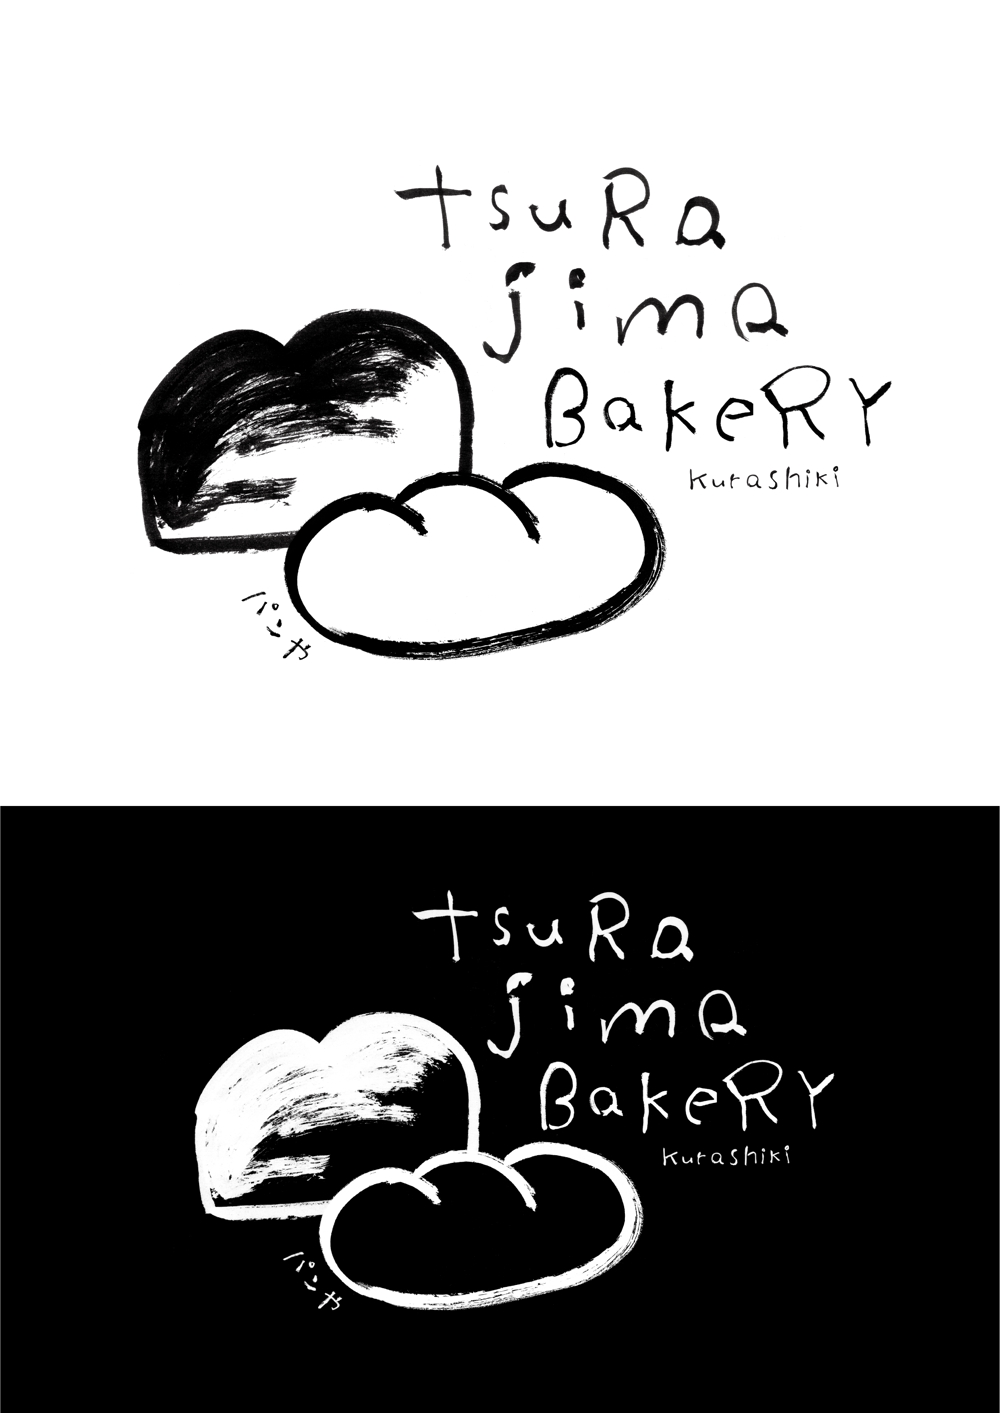 小さな町のパン屋さん「TSURAJIMA　BAKERY」（連島ベーカリー）のロゴ